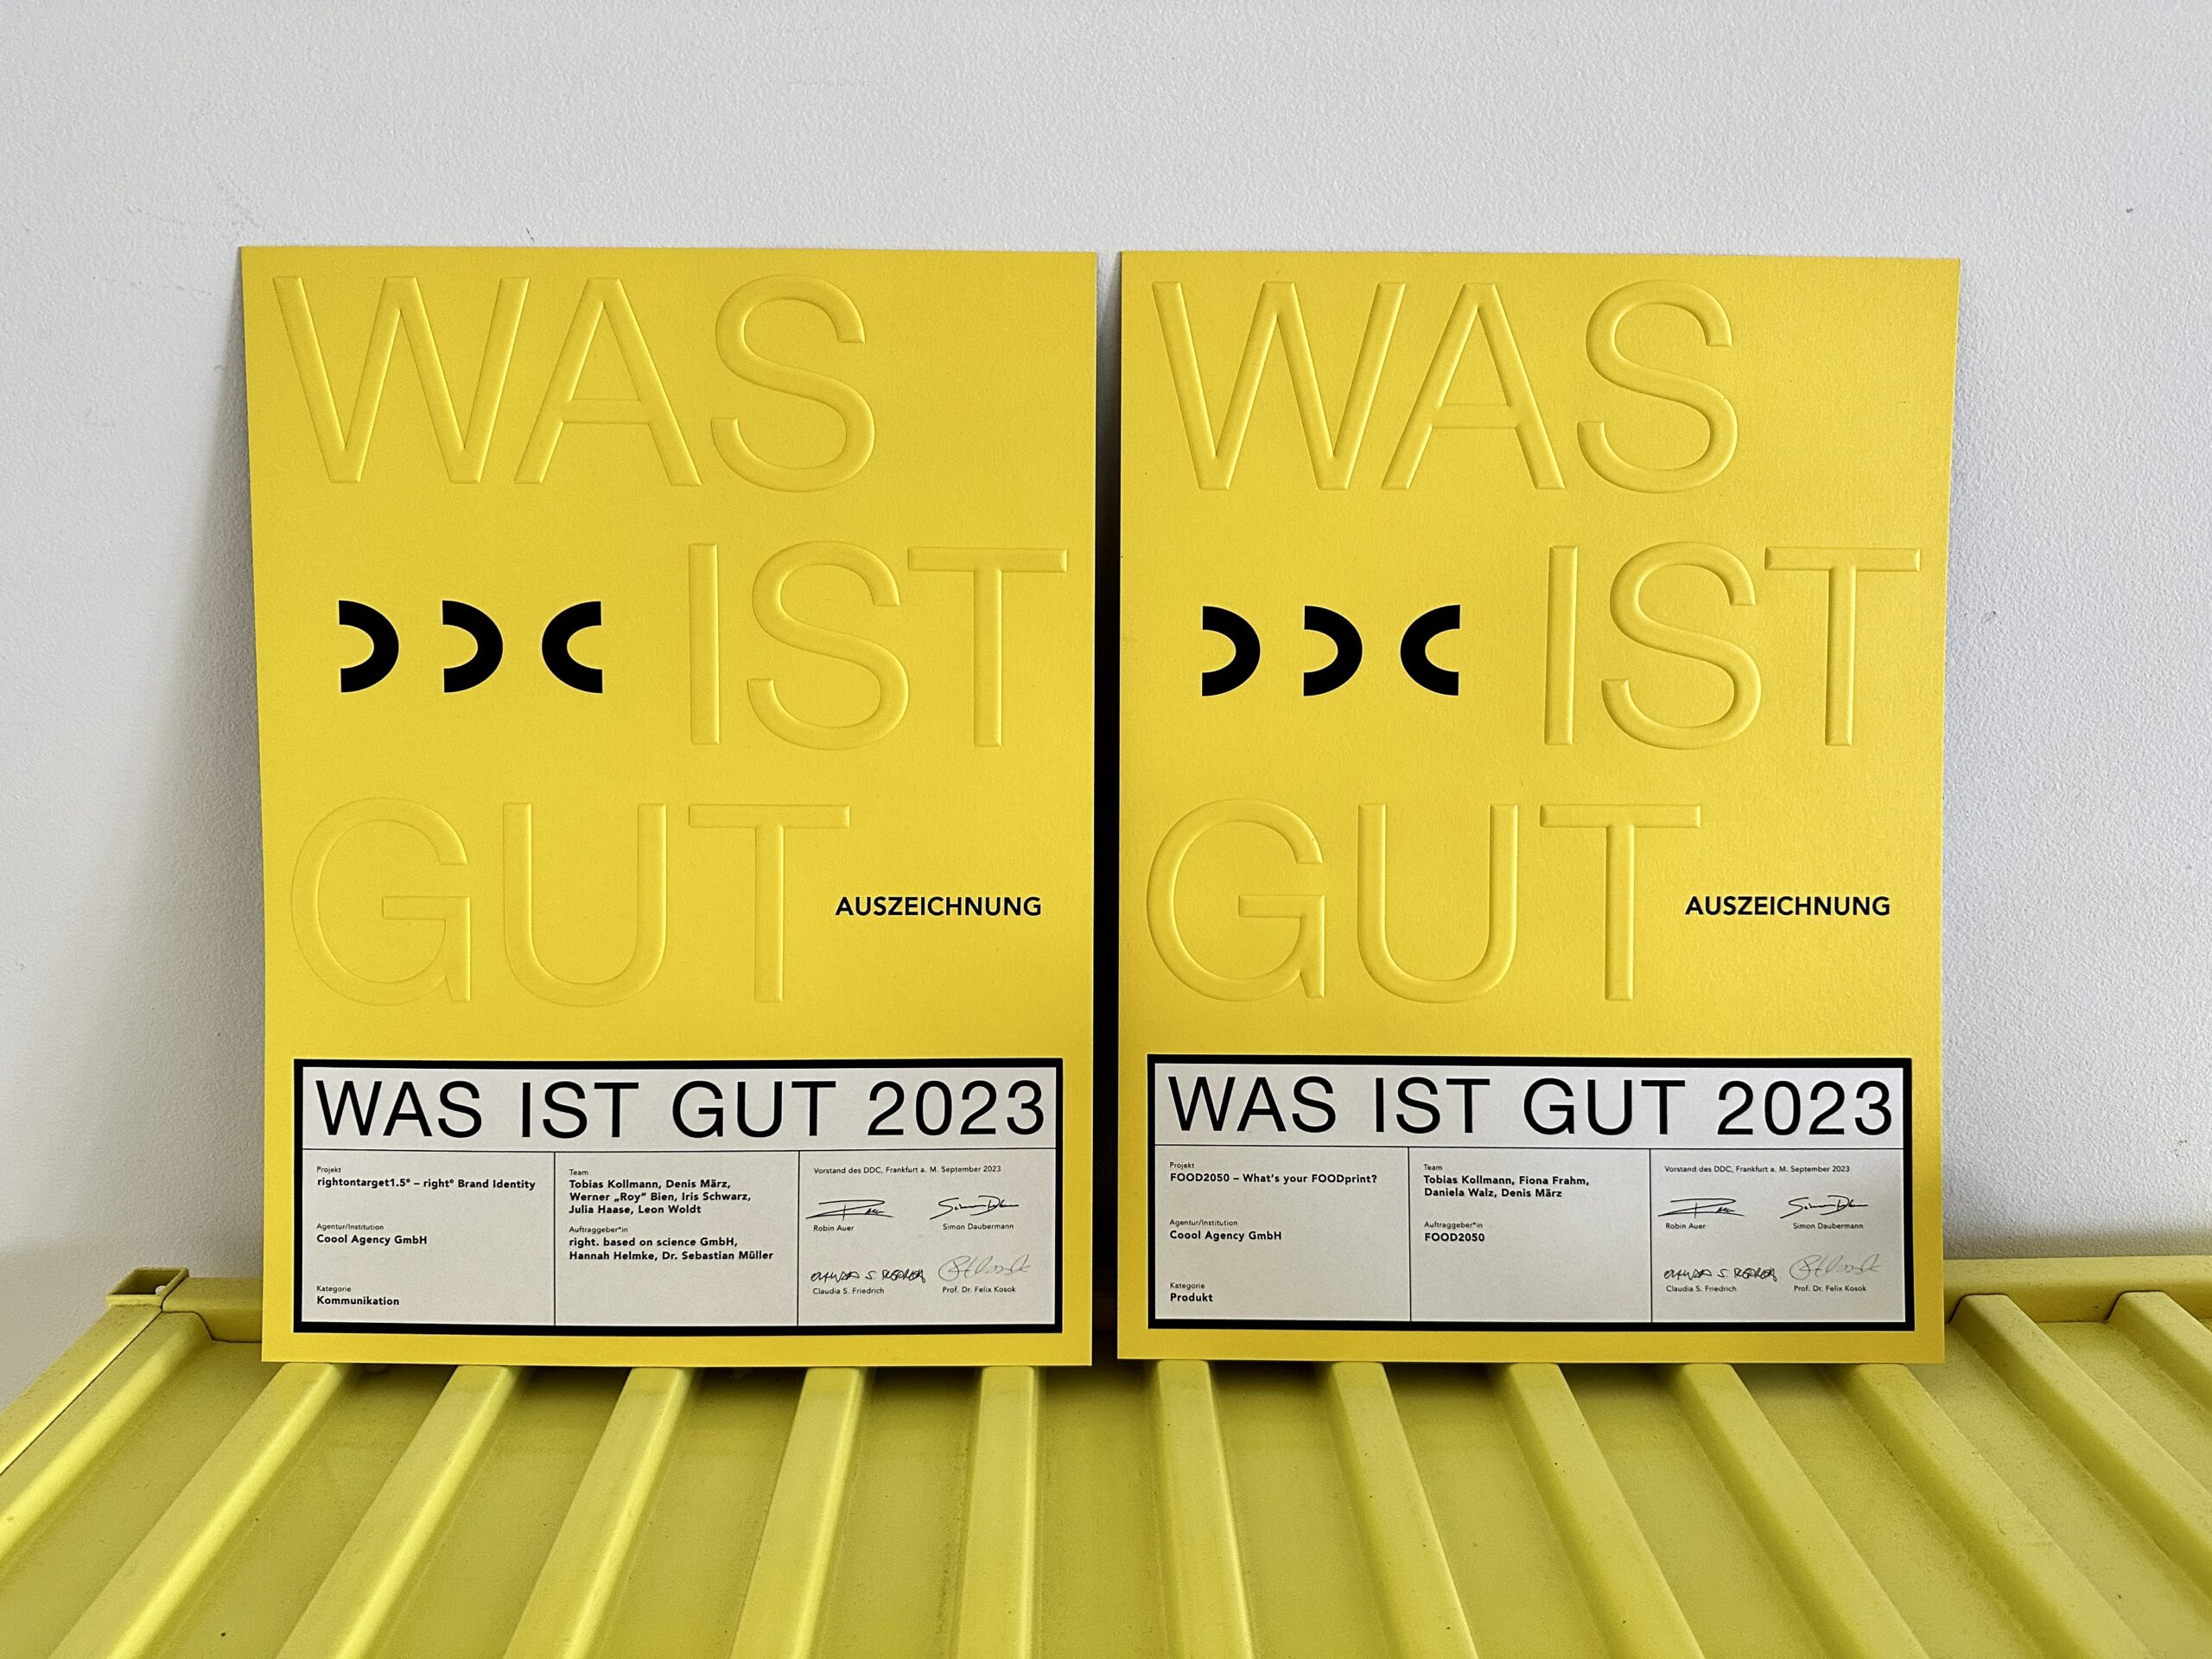 Ausgezeichnet mit dem Award des Deutschen Designer Clubs, DDC